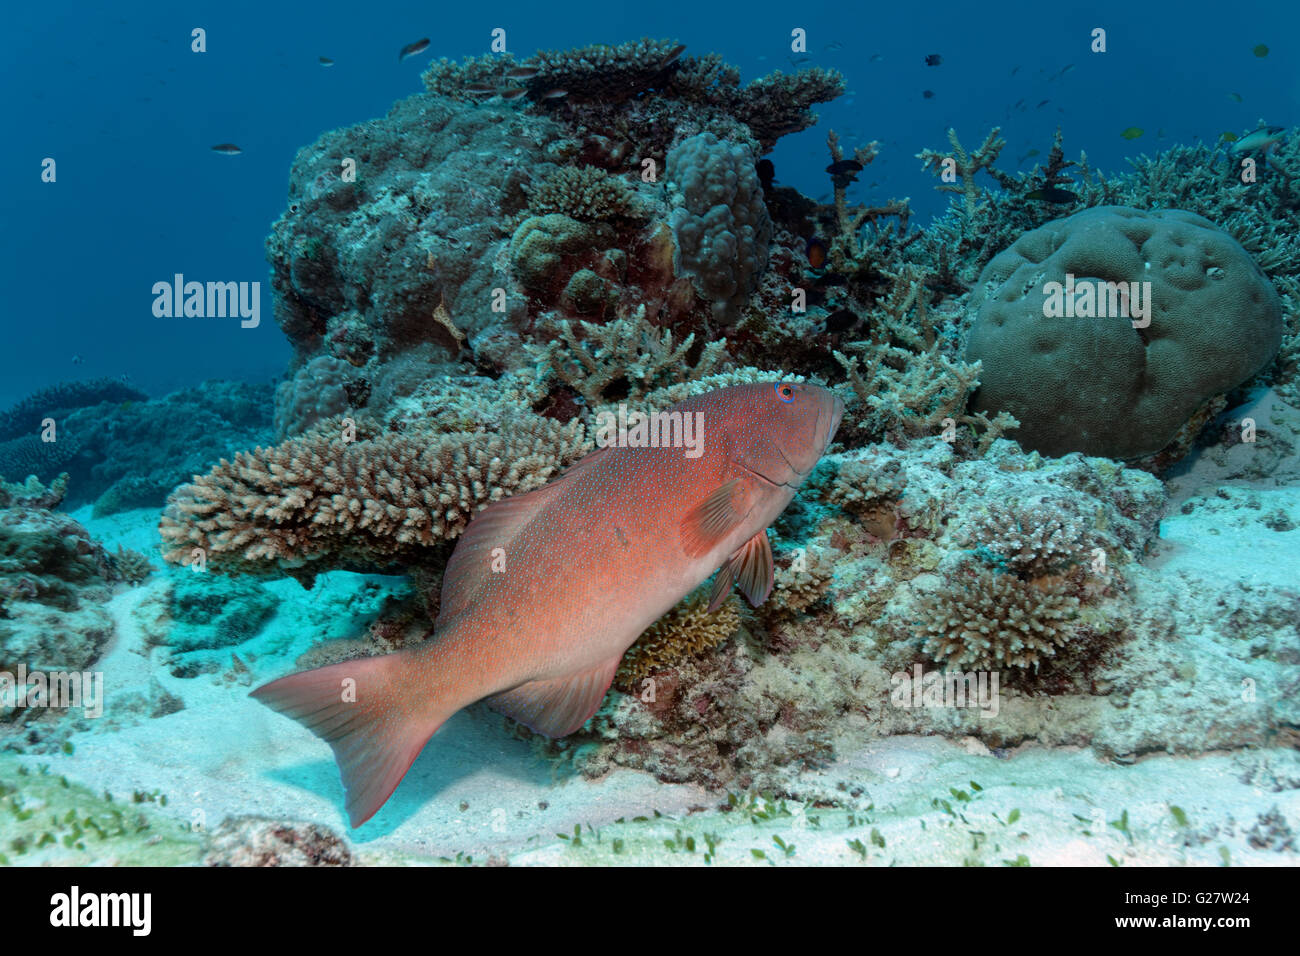 La saumonée léopard, le mérou corail, la saumonée léopard (Plectropomus leopardus) nager sur les récifs coralliens, Grande Barrière de Corail Banque D'Images